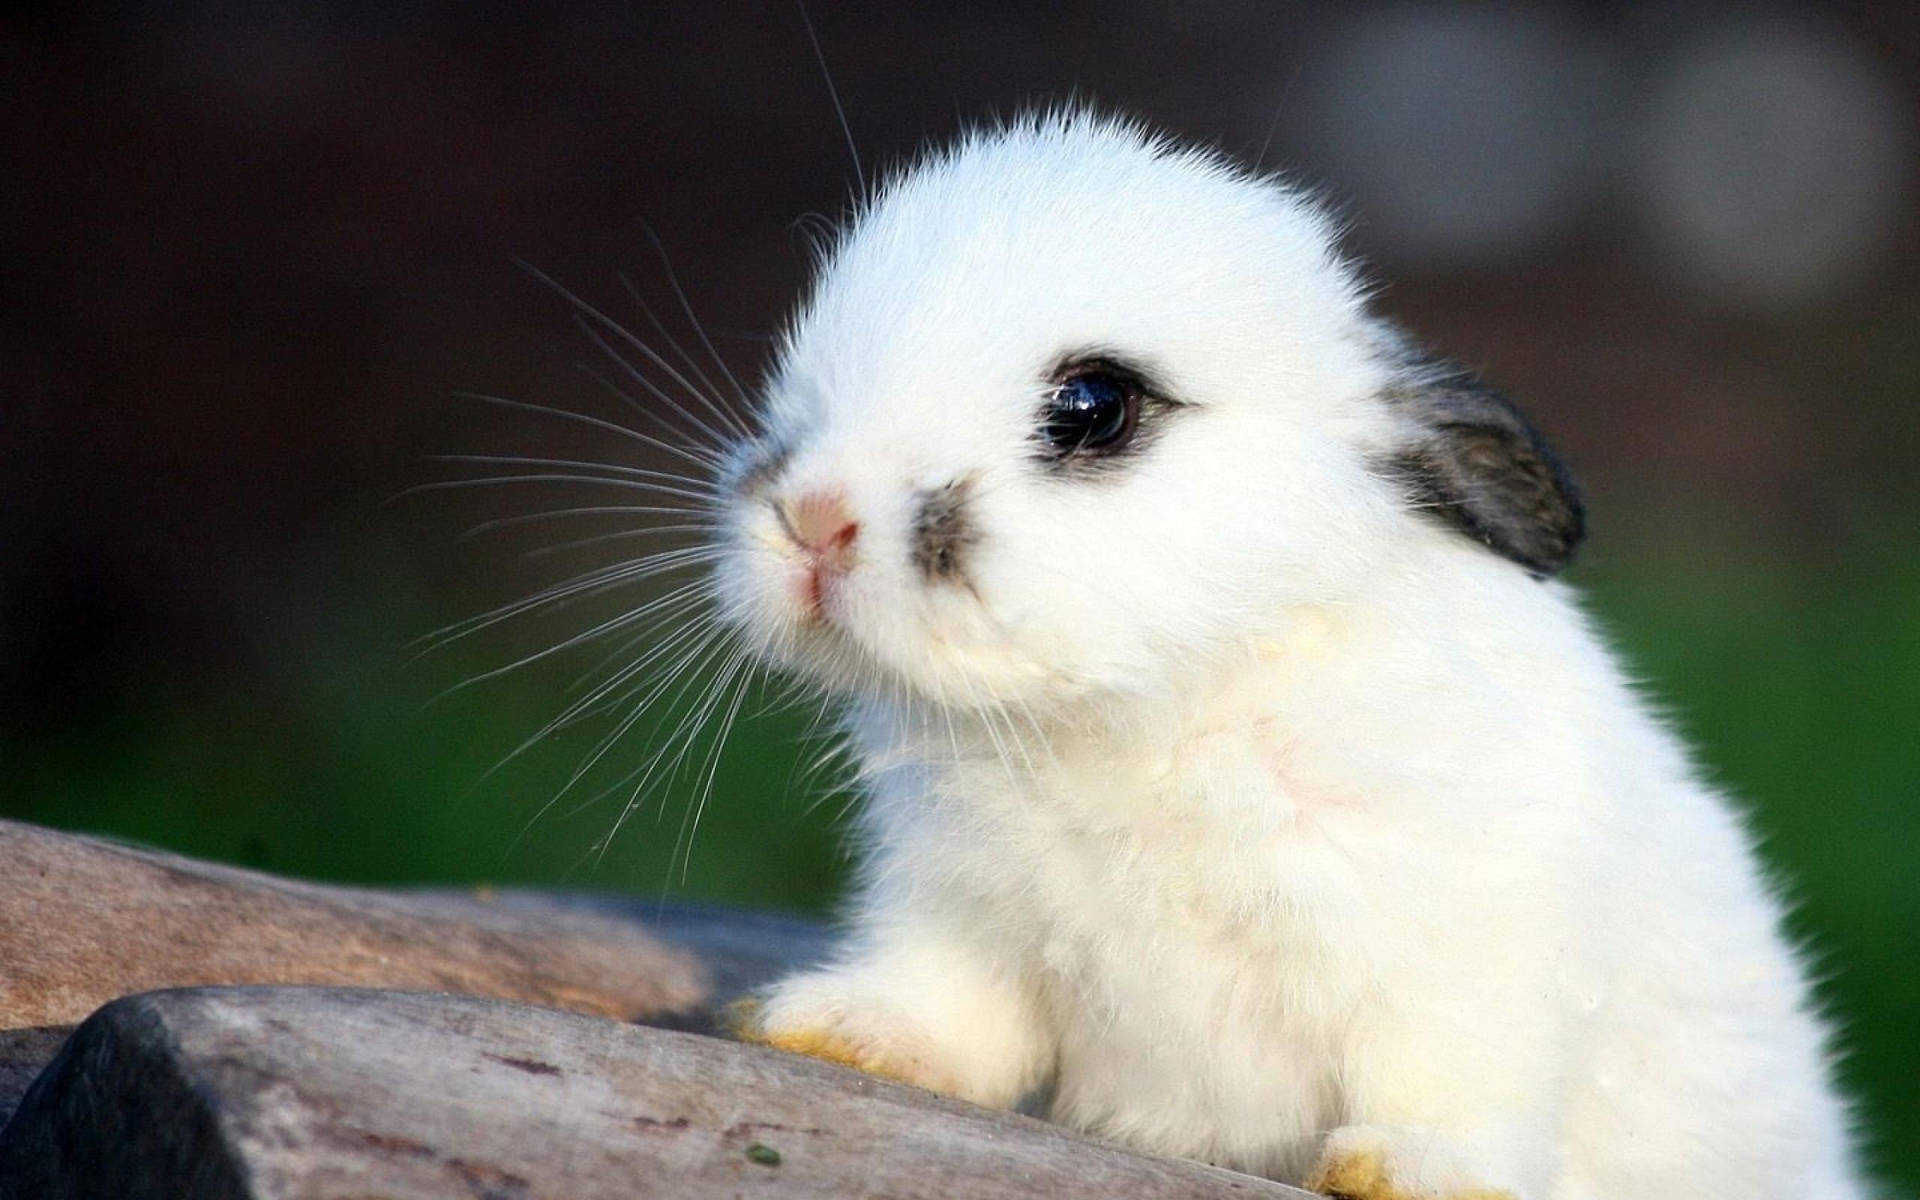 Cute Baby Bunny Wallpaper